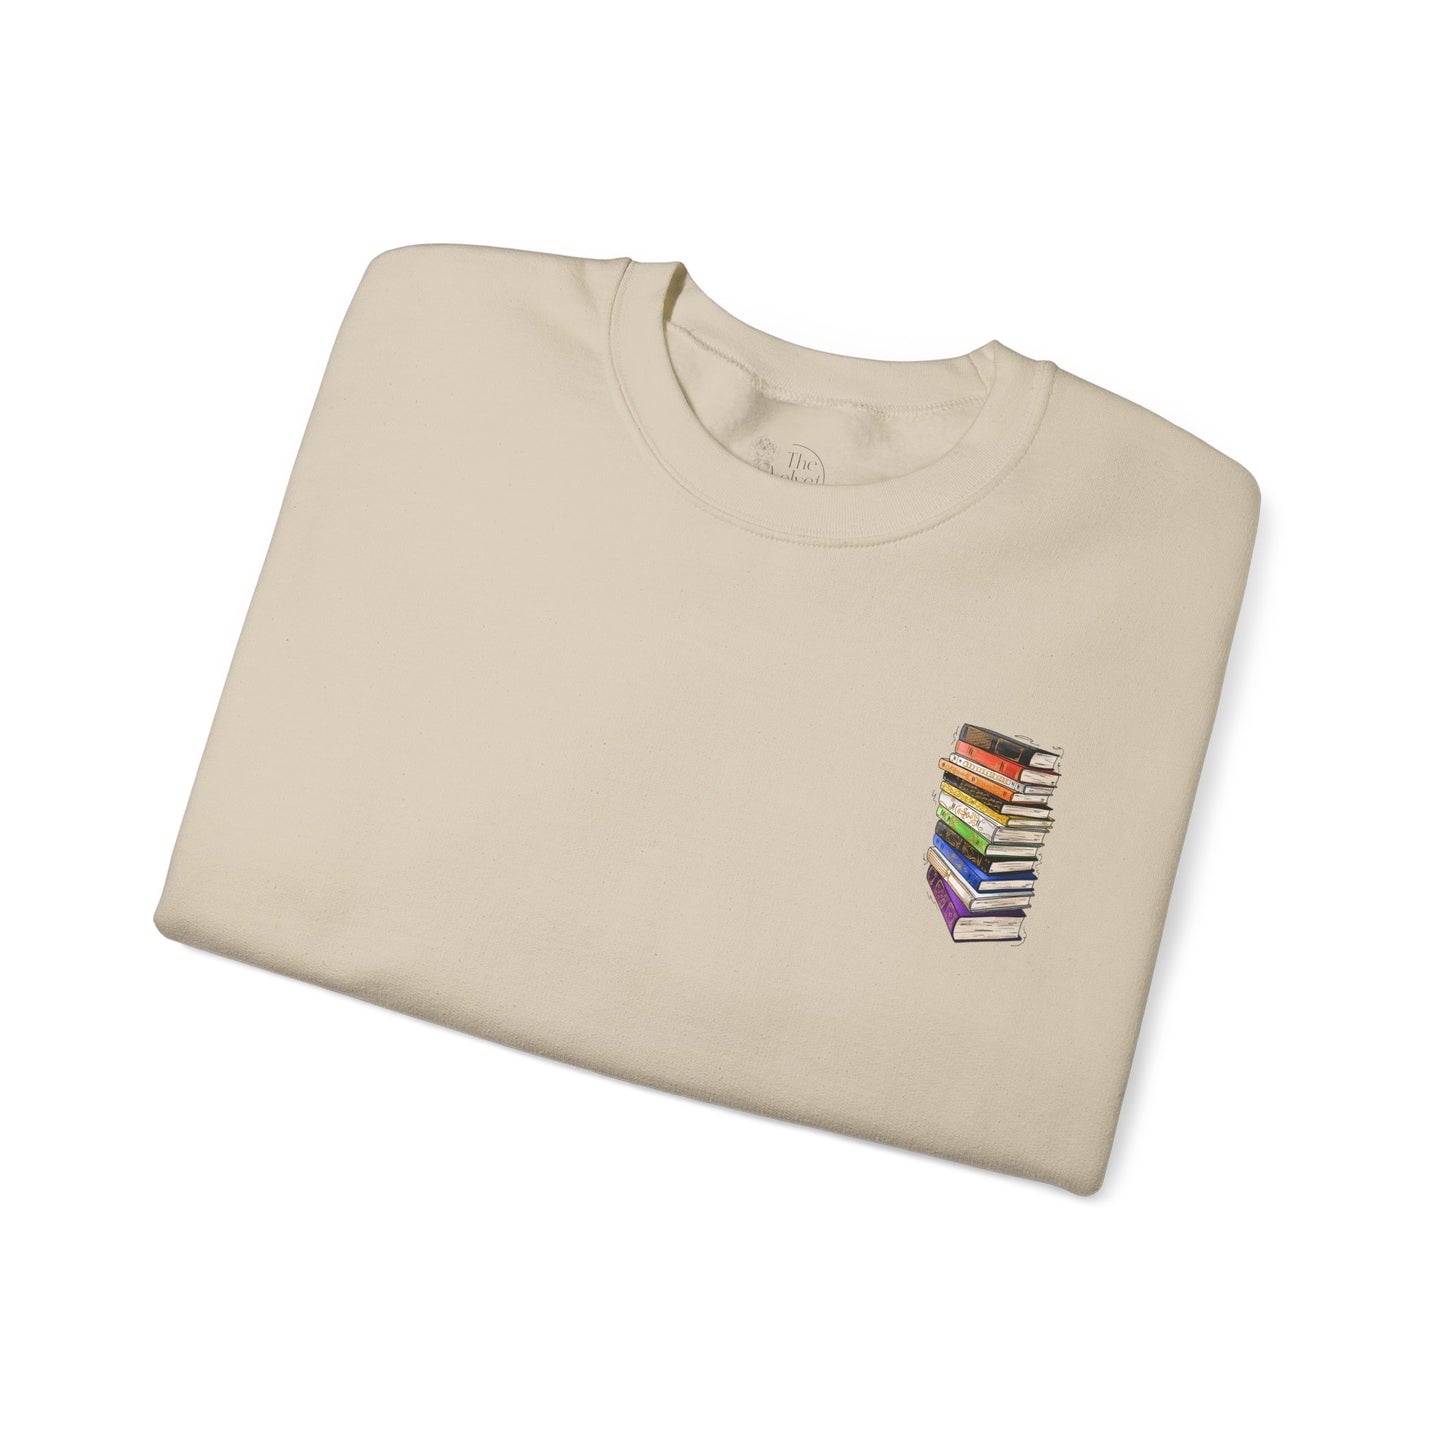 Straight Ally Pride Flag Old Books - Adult Unisex Sweatshirt